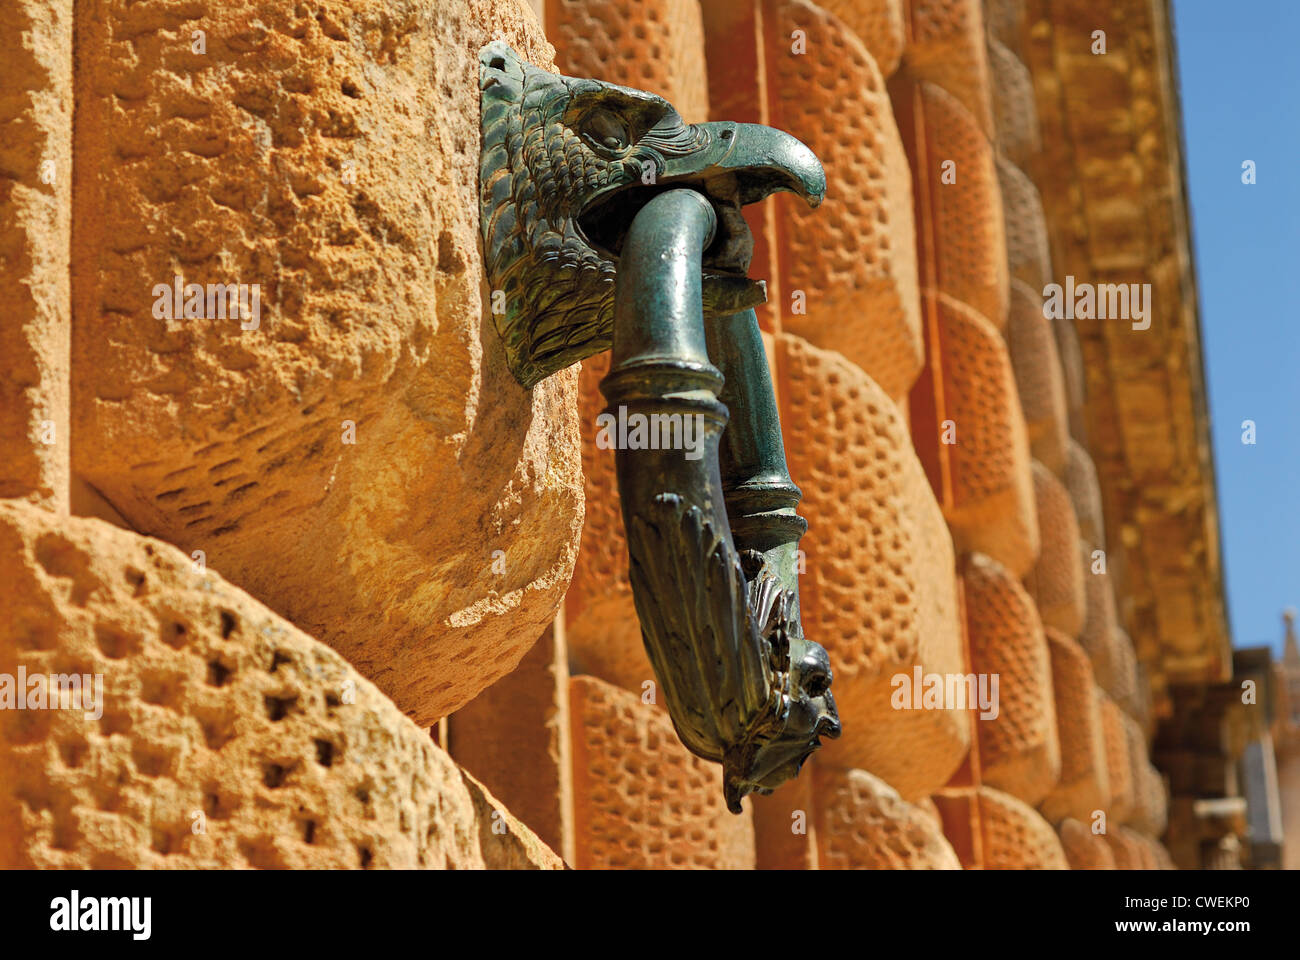 Spanien, Andalusien: Detail des Portals der Palast von Charles V.  in der Alhambra von Granada Stockfoto